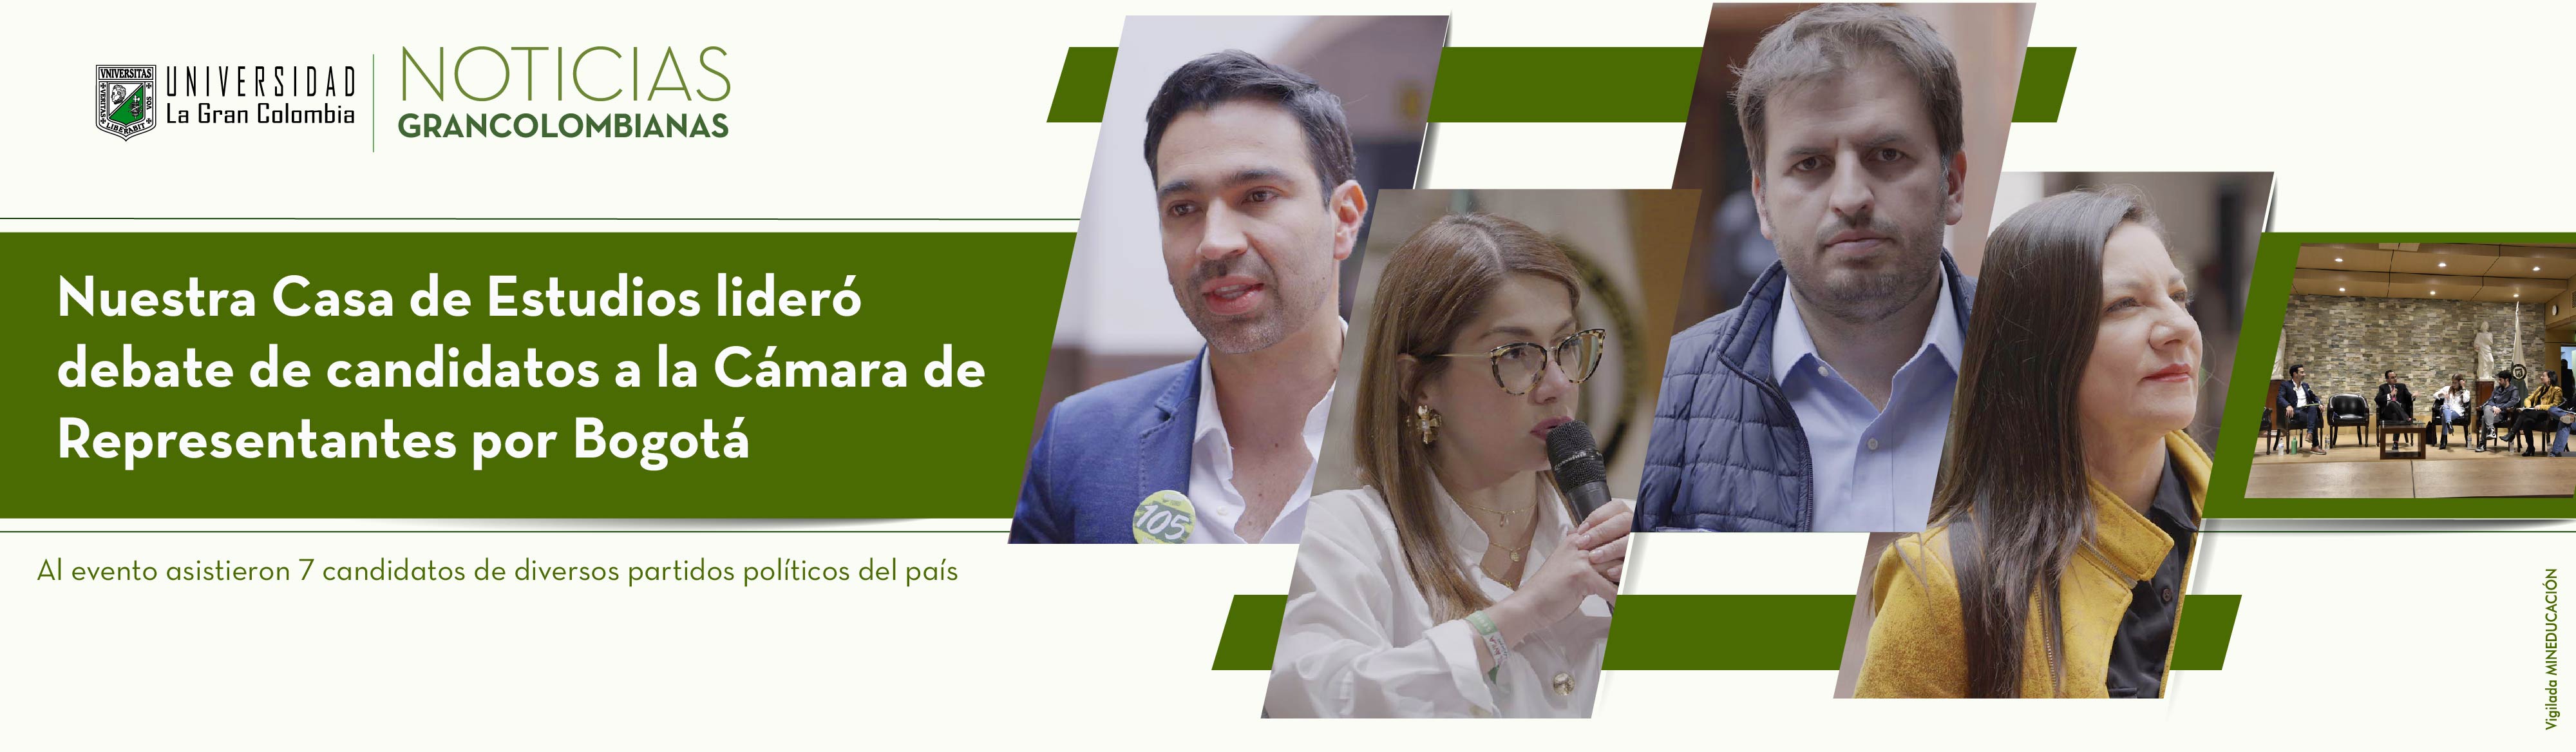 Nuestra Casa de Estudios lideró debate de candidatos a la Cámara de Representantes por Bogotá